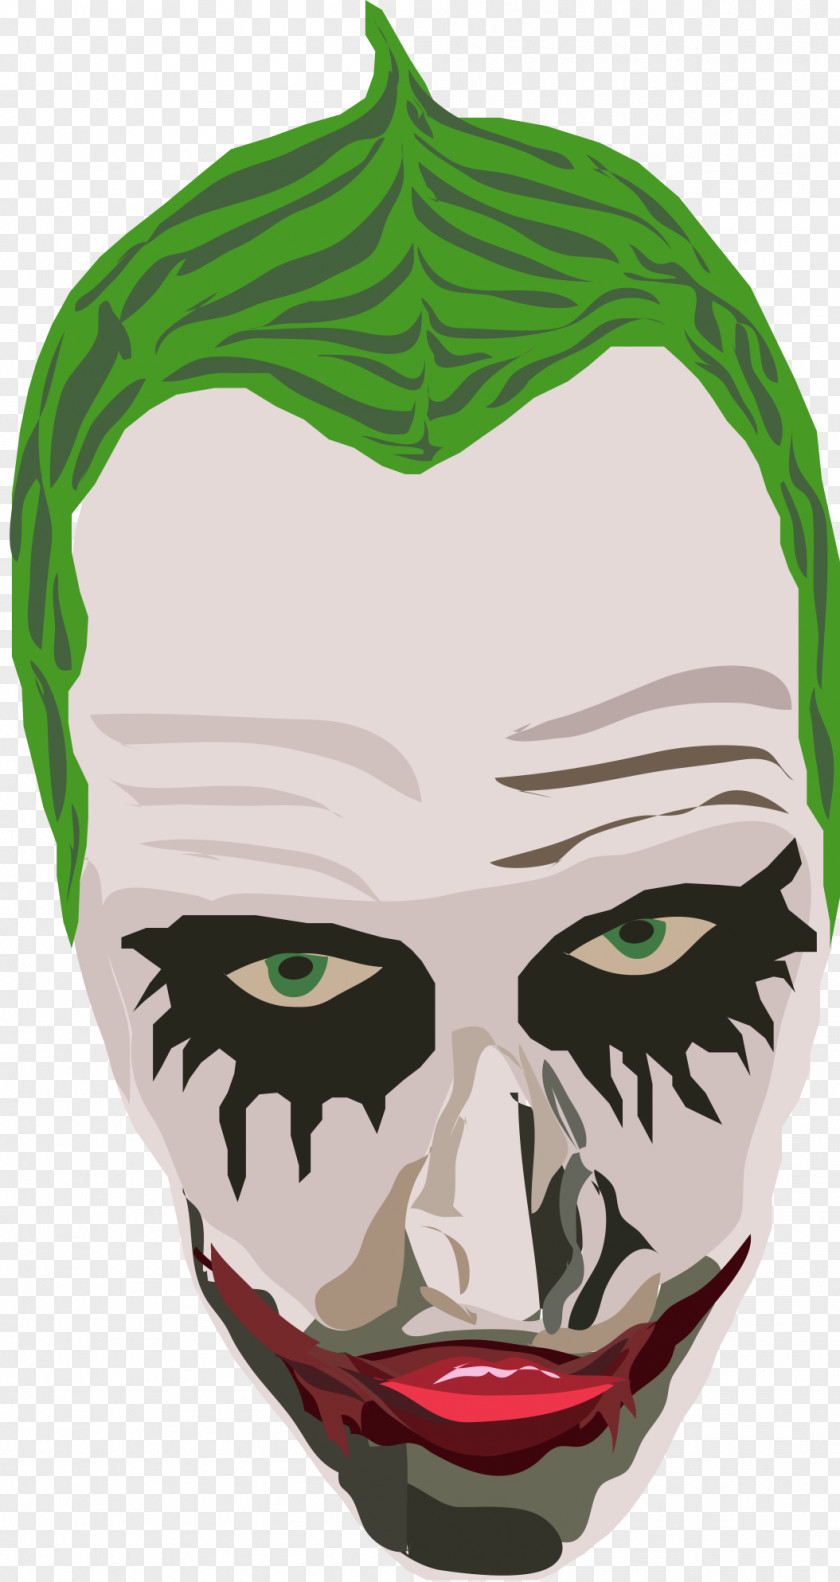 Joker Vector Green Mask Facebook PNG